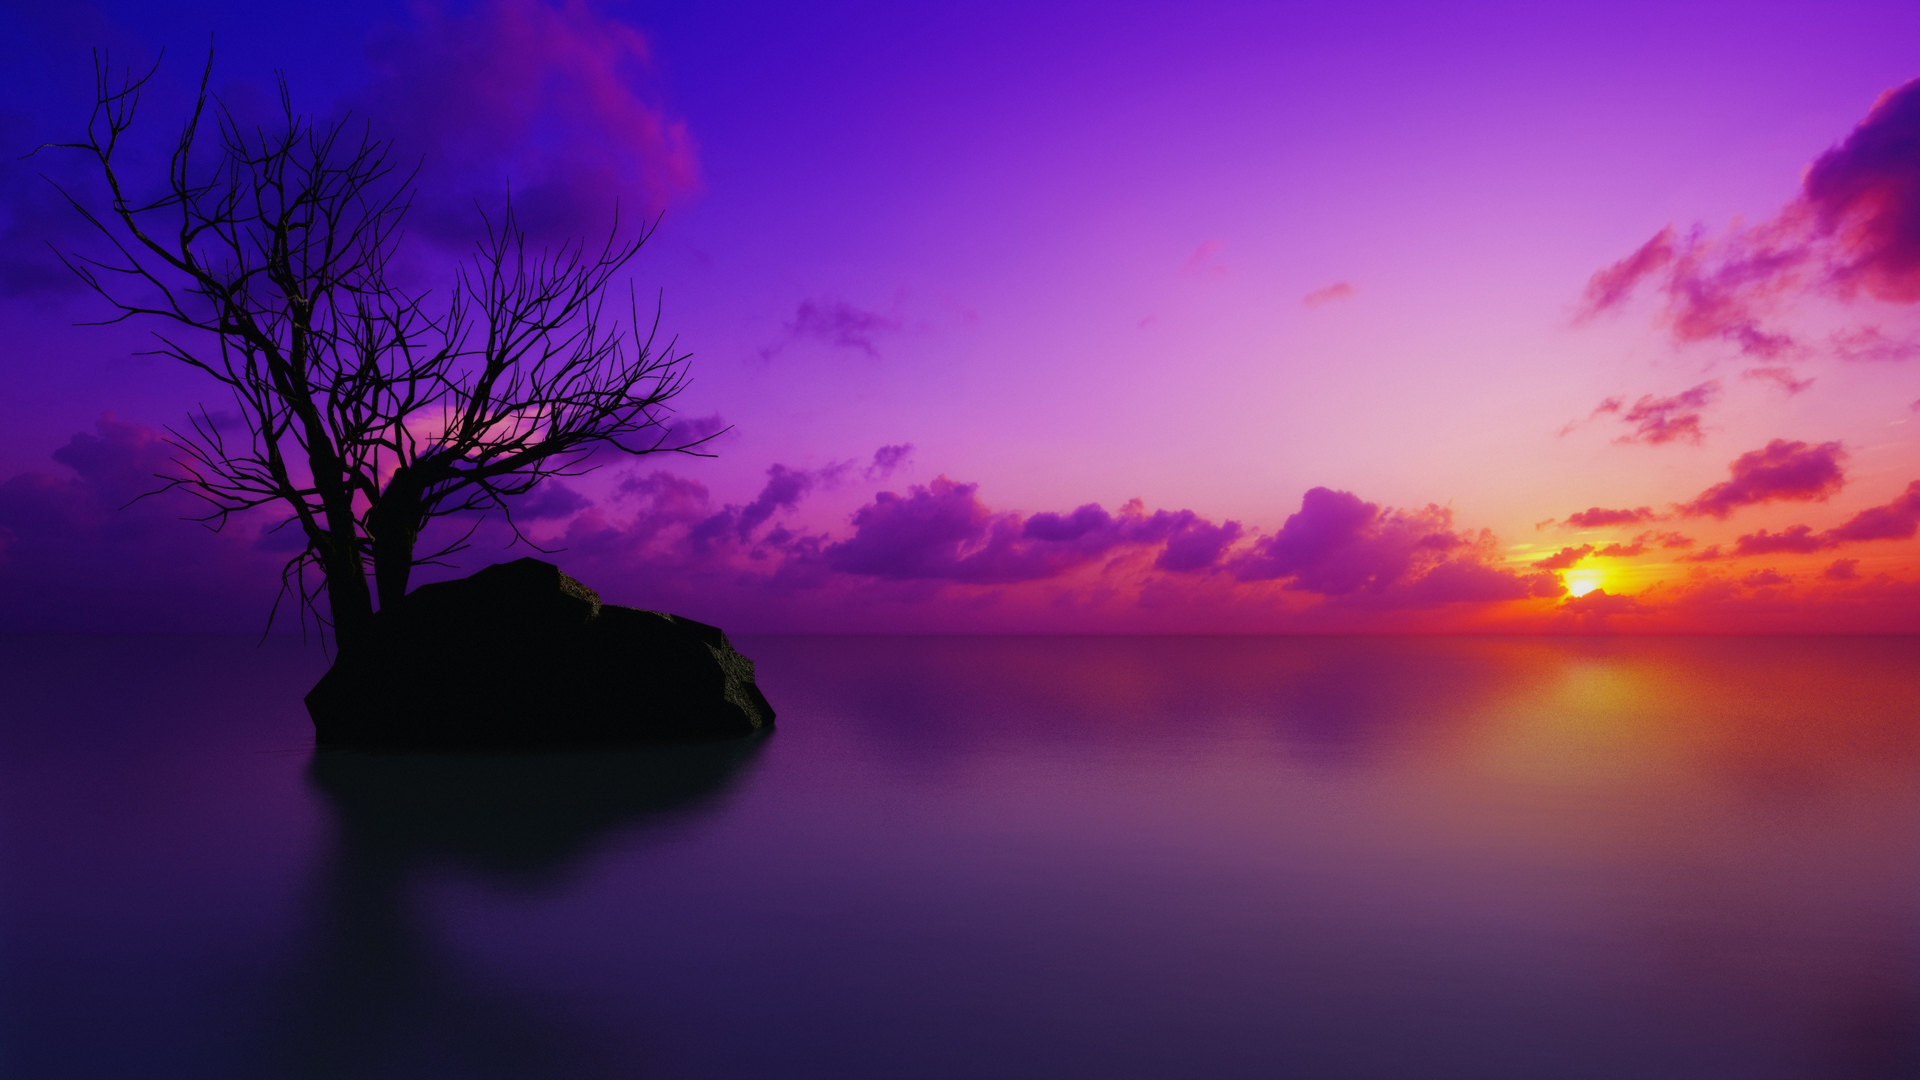 sunset, sunrise, landscapes - desktop wallpaper